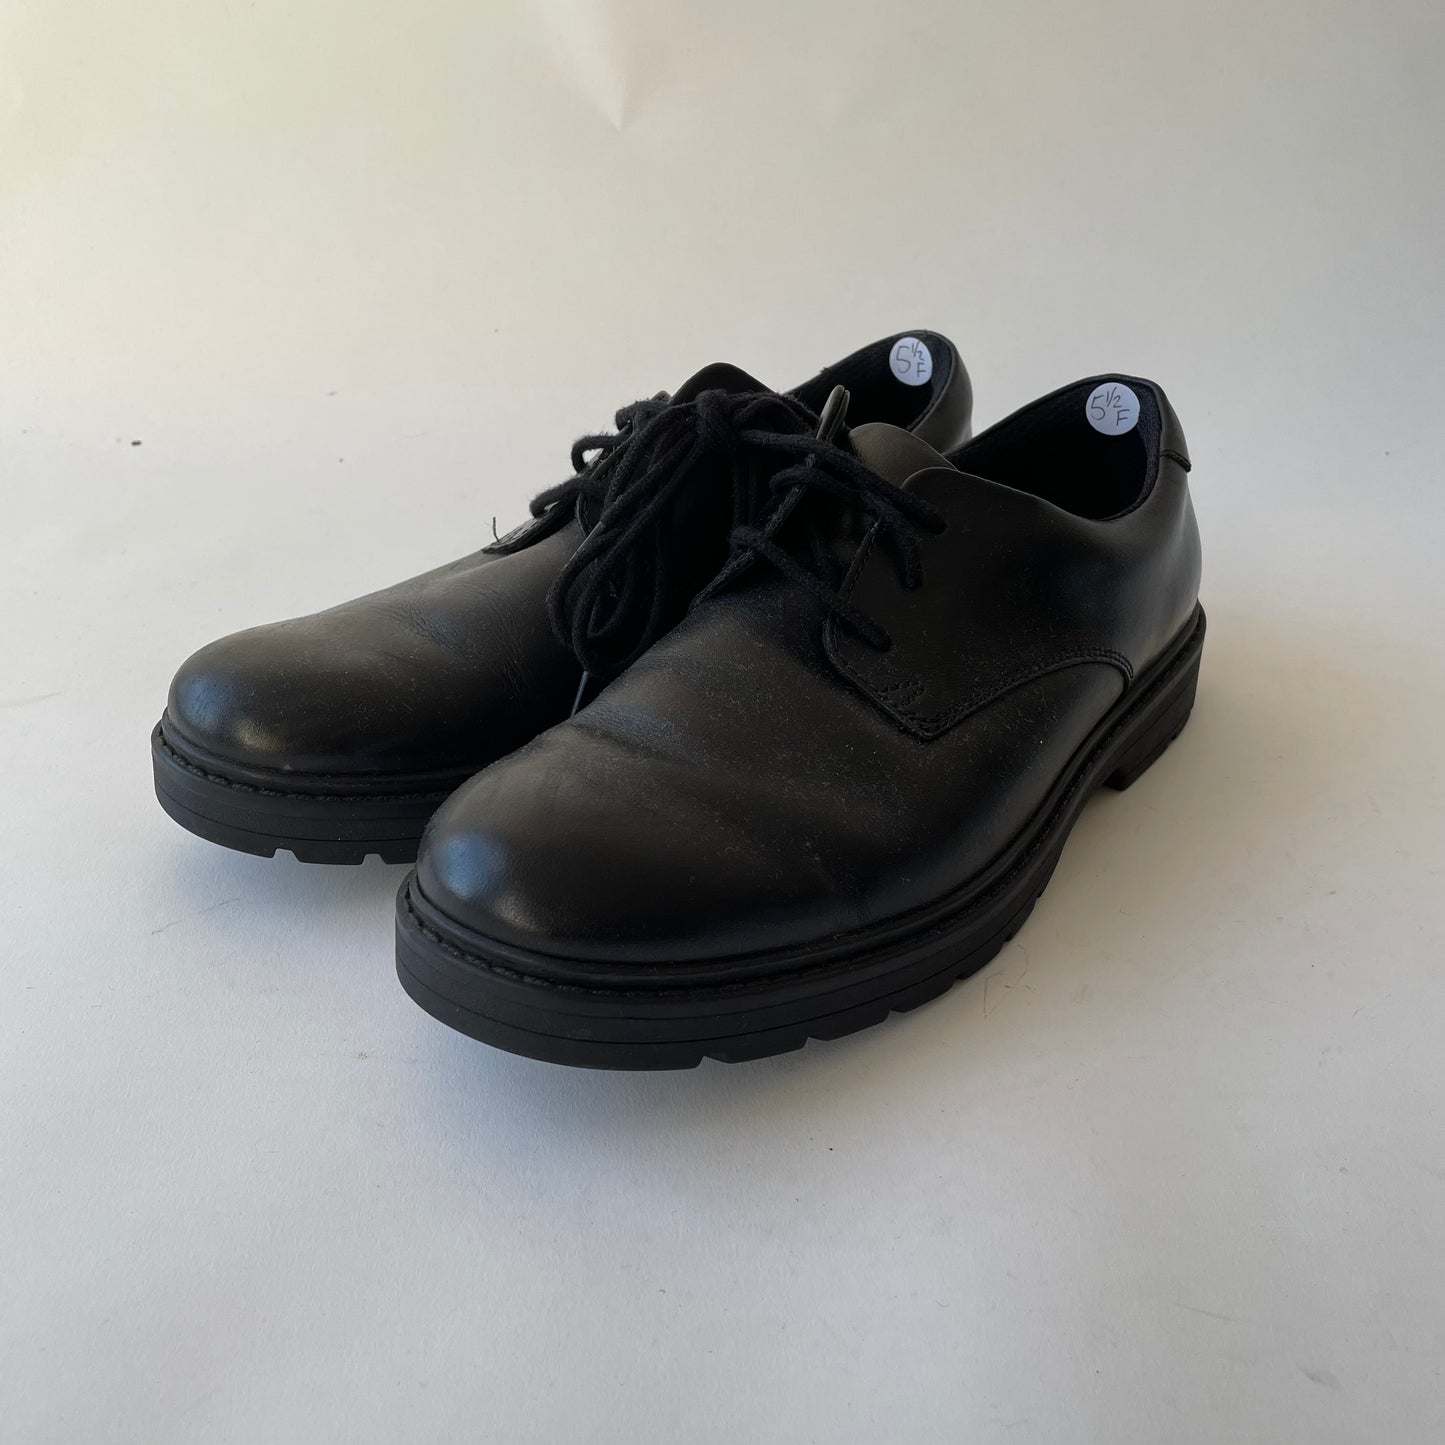 Clarks Black Shoes Shoe Size 5.5F